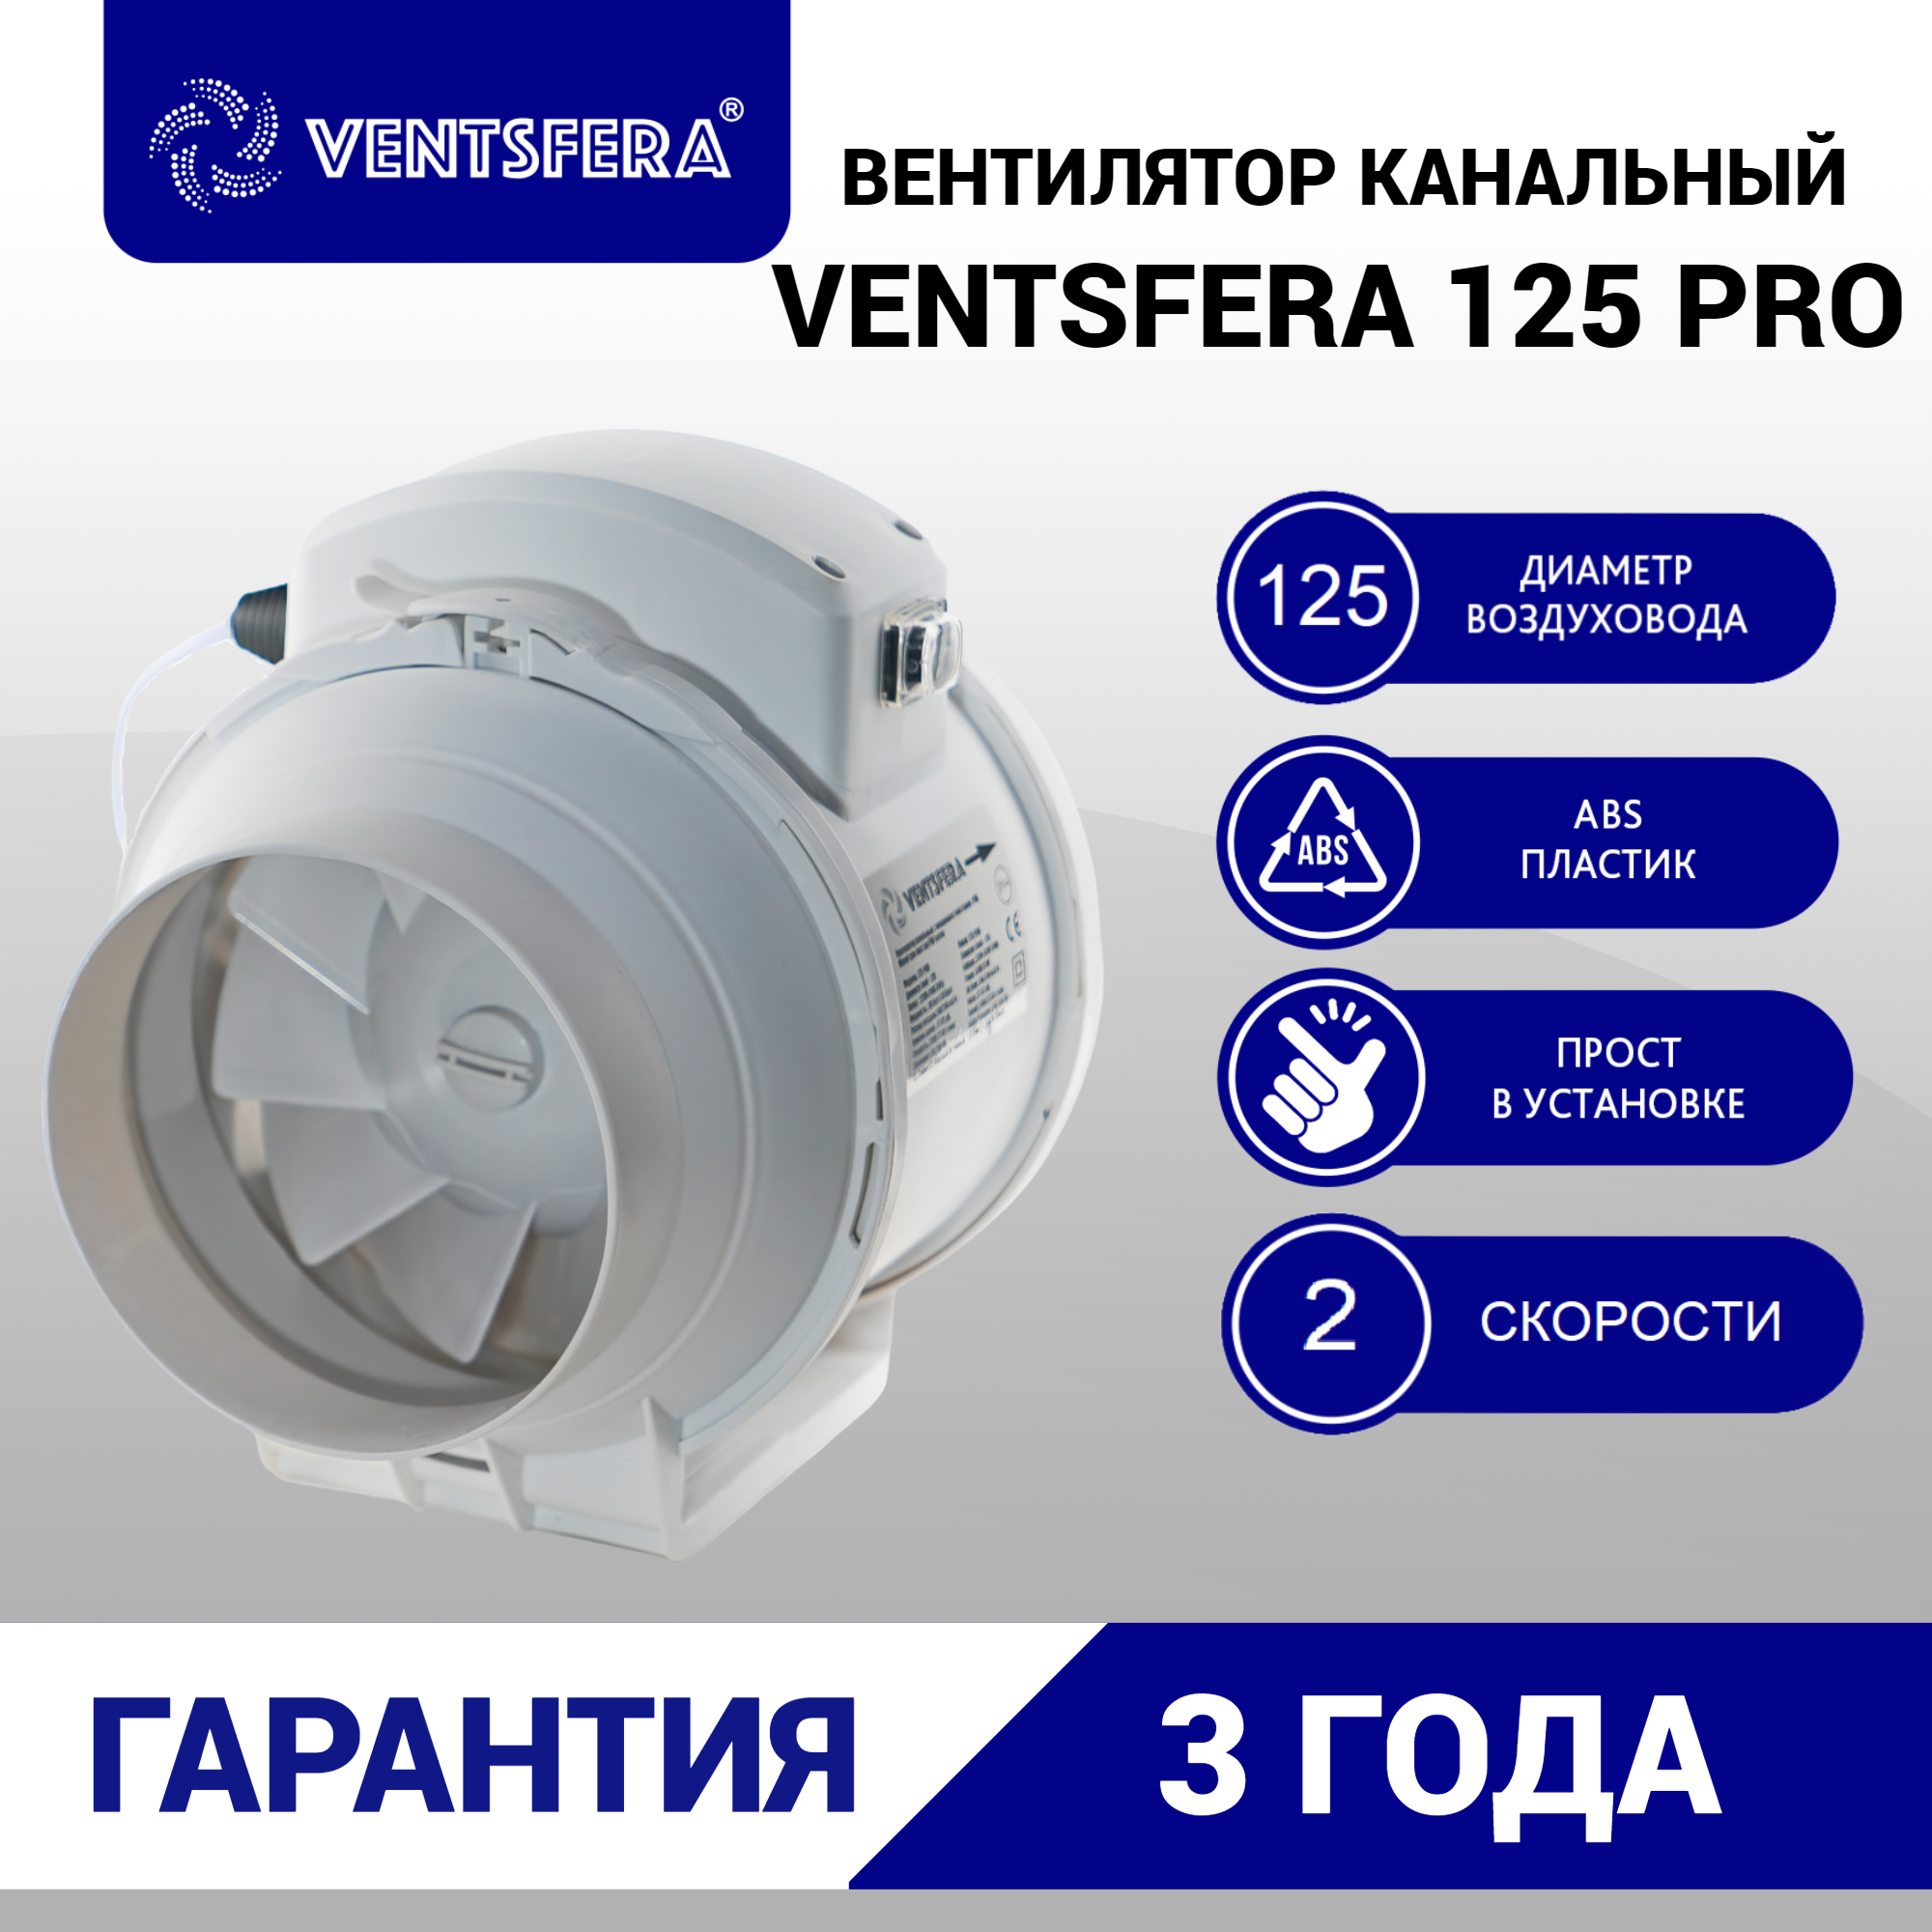 Вентилятор канальный D125, VENTSFERA PRO 125 двухскоростной осевой канальный вентилятор + кнопка на корпусе для переключения скоростей